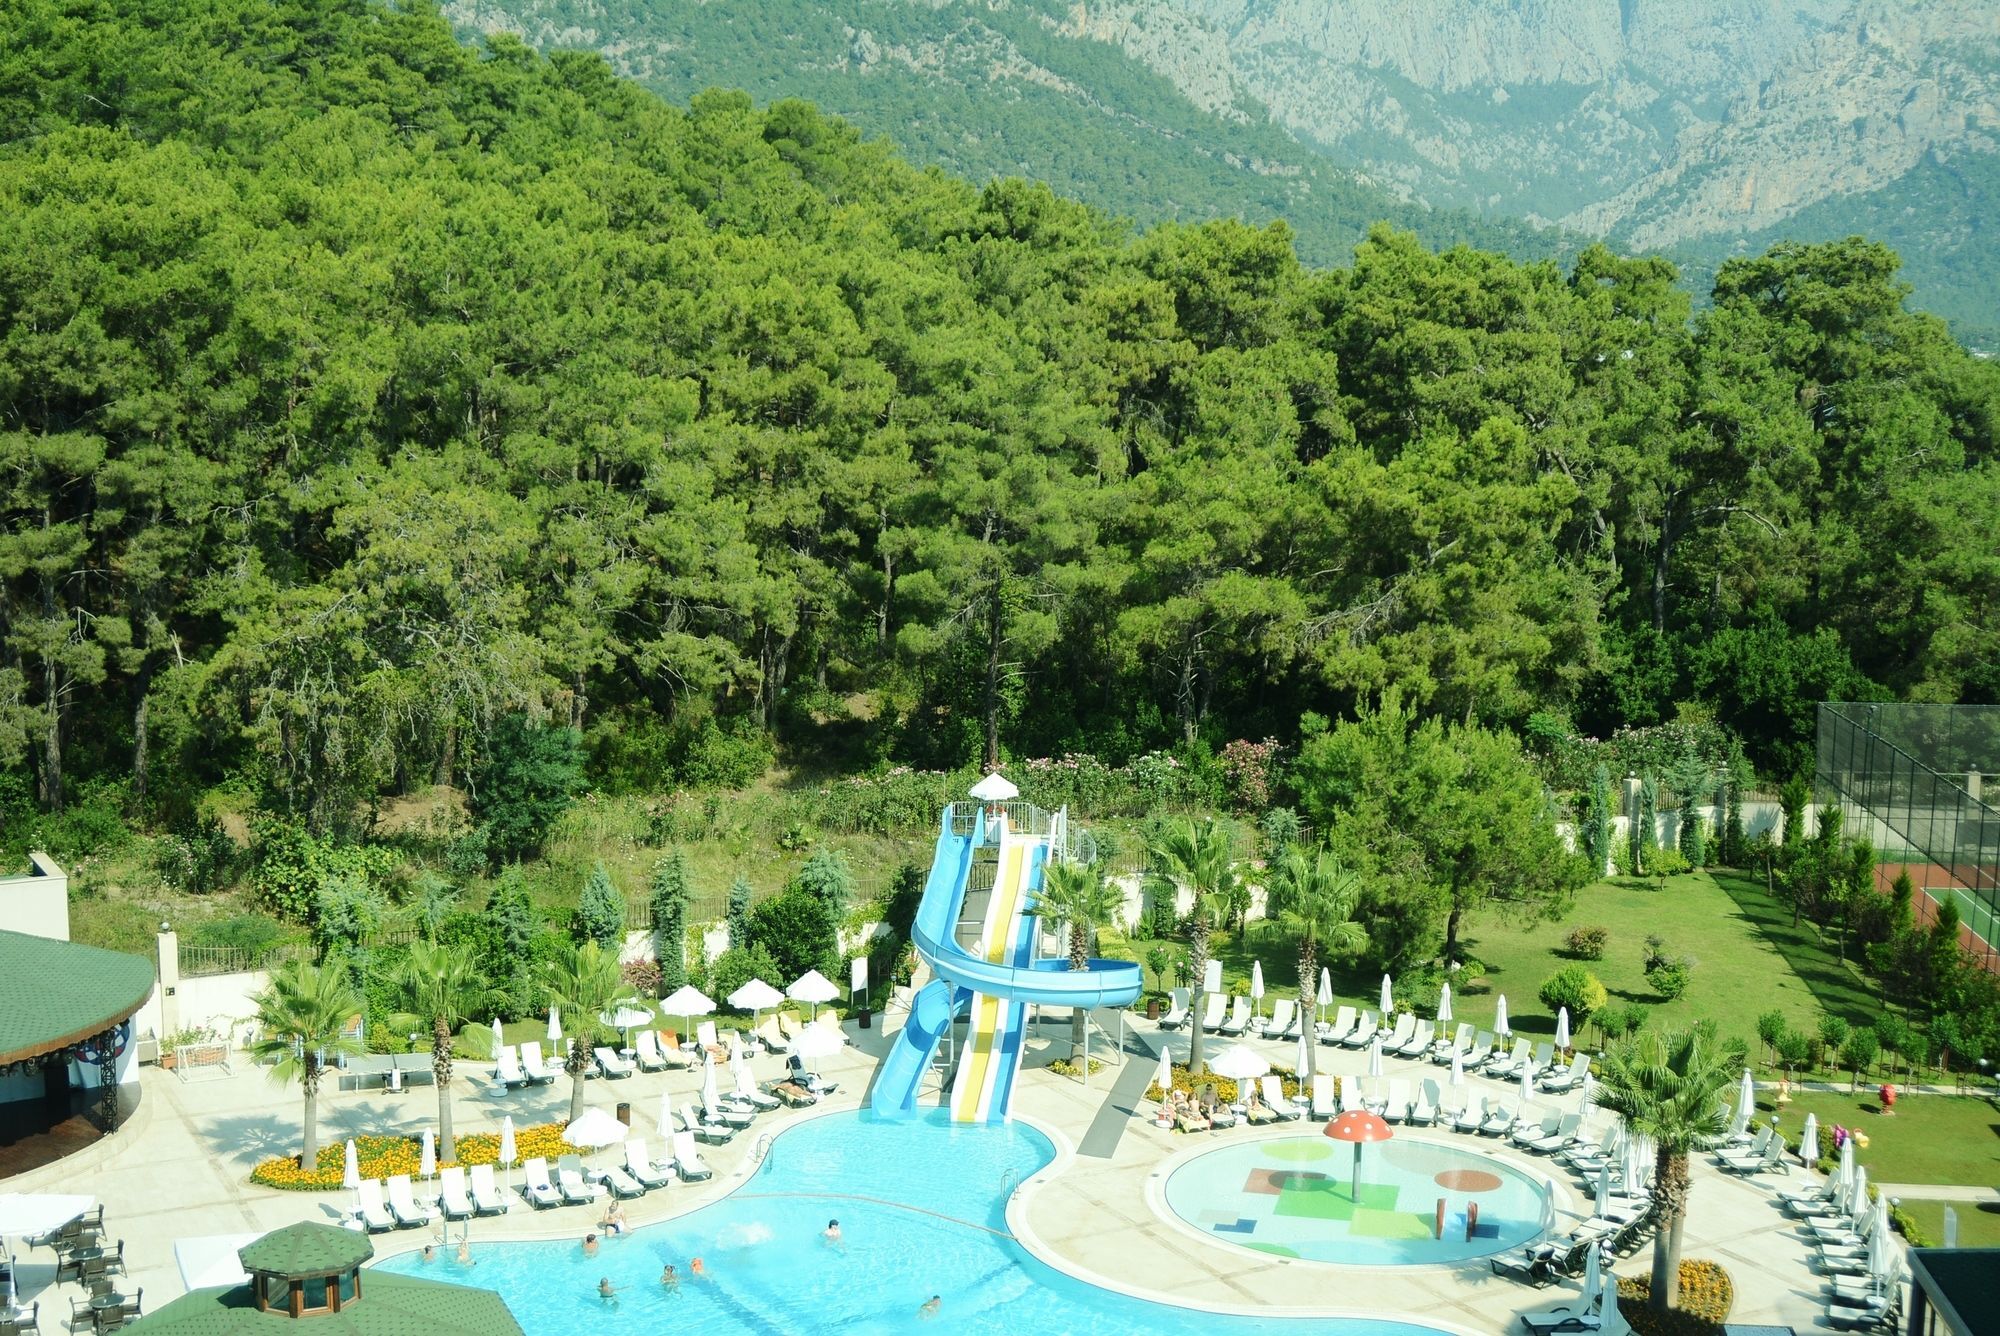 Отель Eldar Resort 4 Турция. Отель Кемер Эль да Резорт. Eldar garden hotel кемер